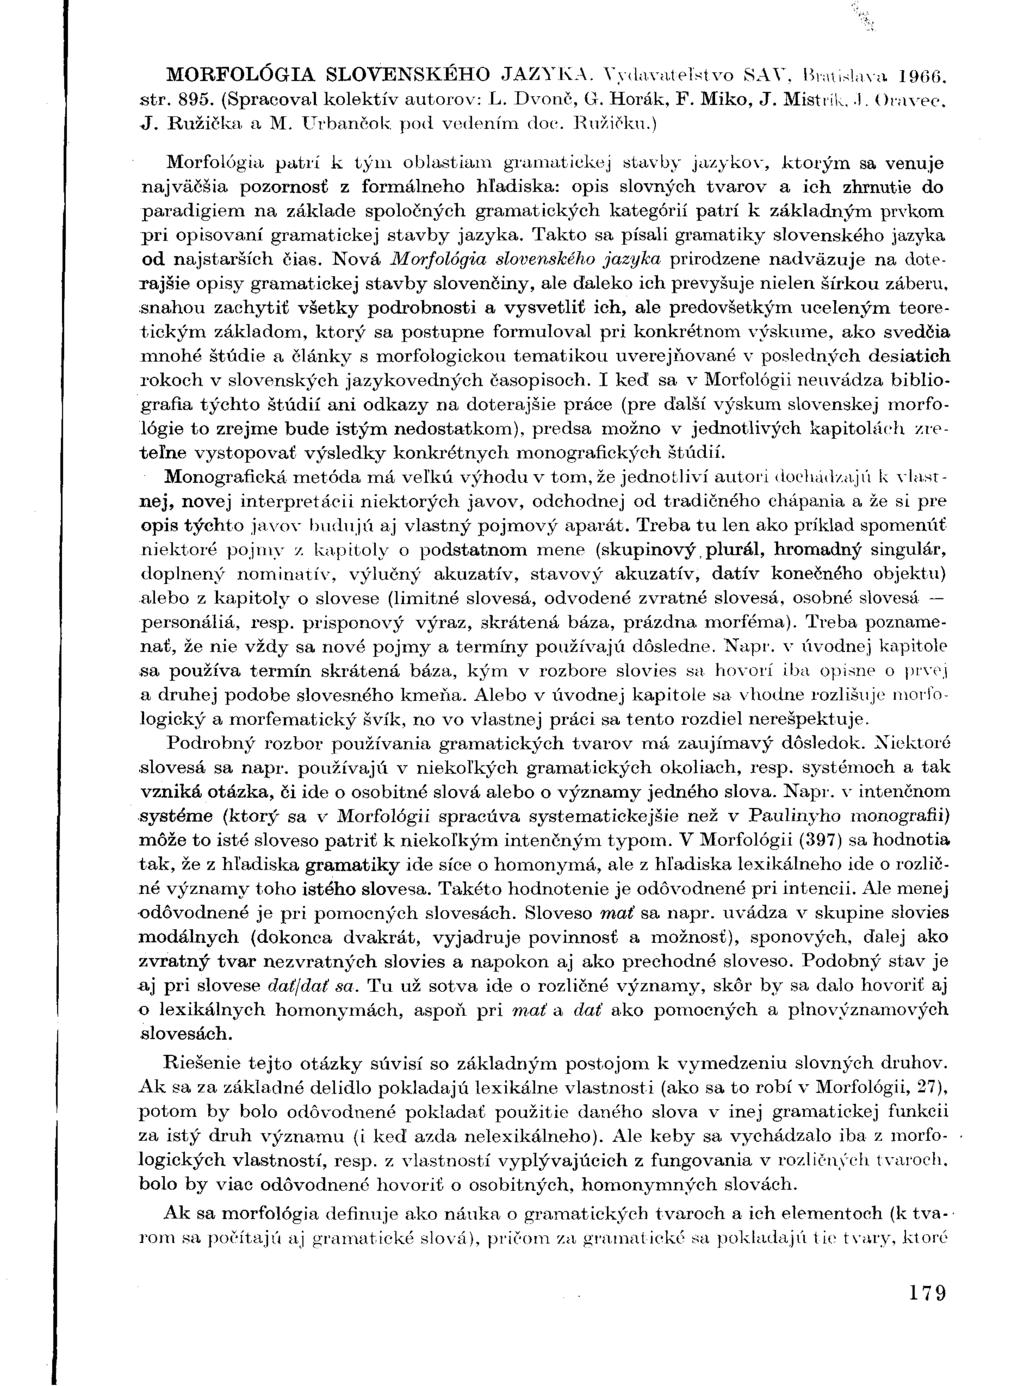 MORFOLÓGIA SLOVENSKÉHO JAZYKA. Vydavateľstvo SAY. Bratislava 1966, str. 895. (Spracoval kolektív autorov: L. Dvonč, G. Horák, F. Miko, J. Mistrík..1. Oravec, J. Ružička a M. Urbančok pod vedením doc.